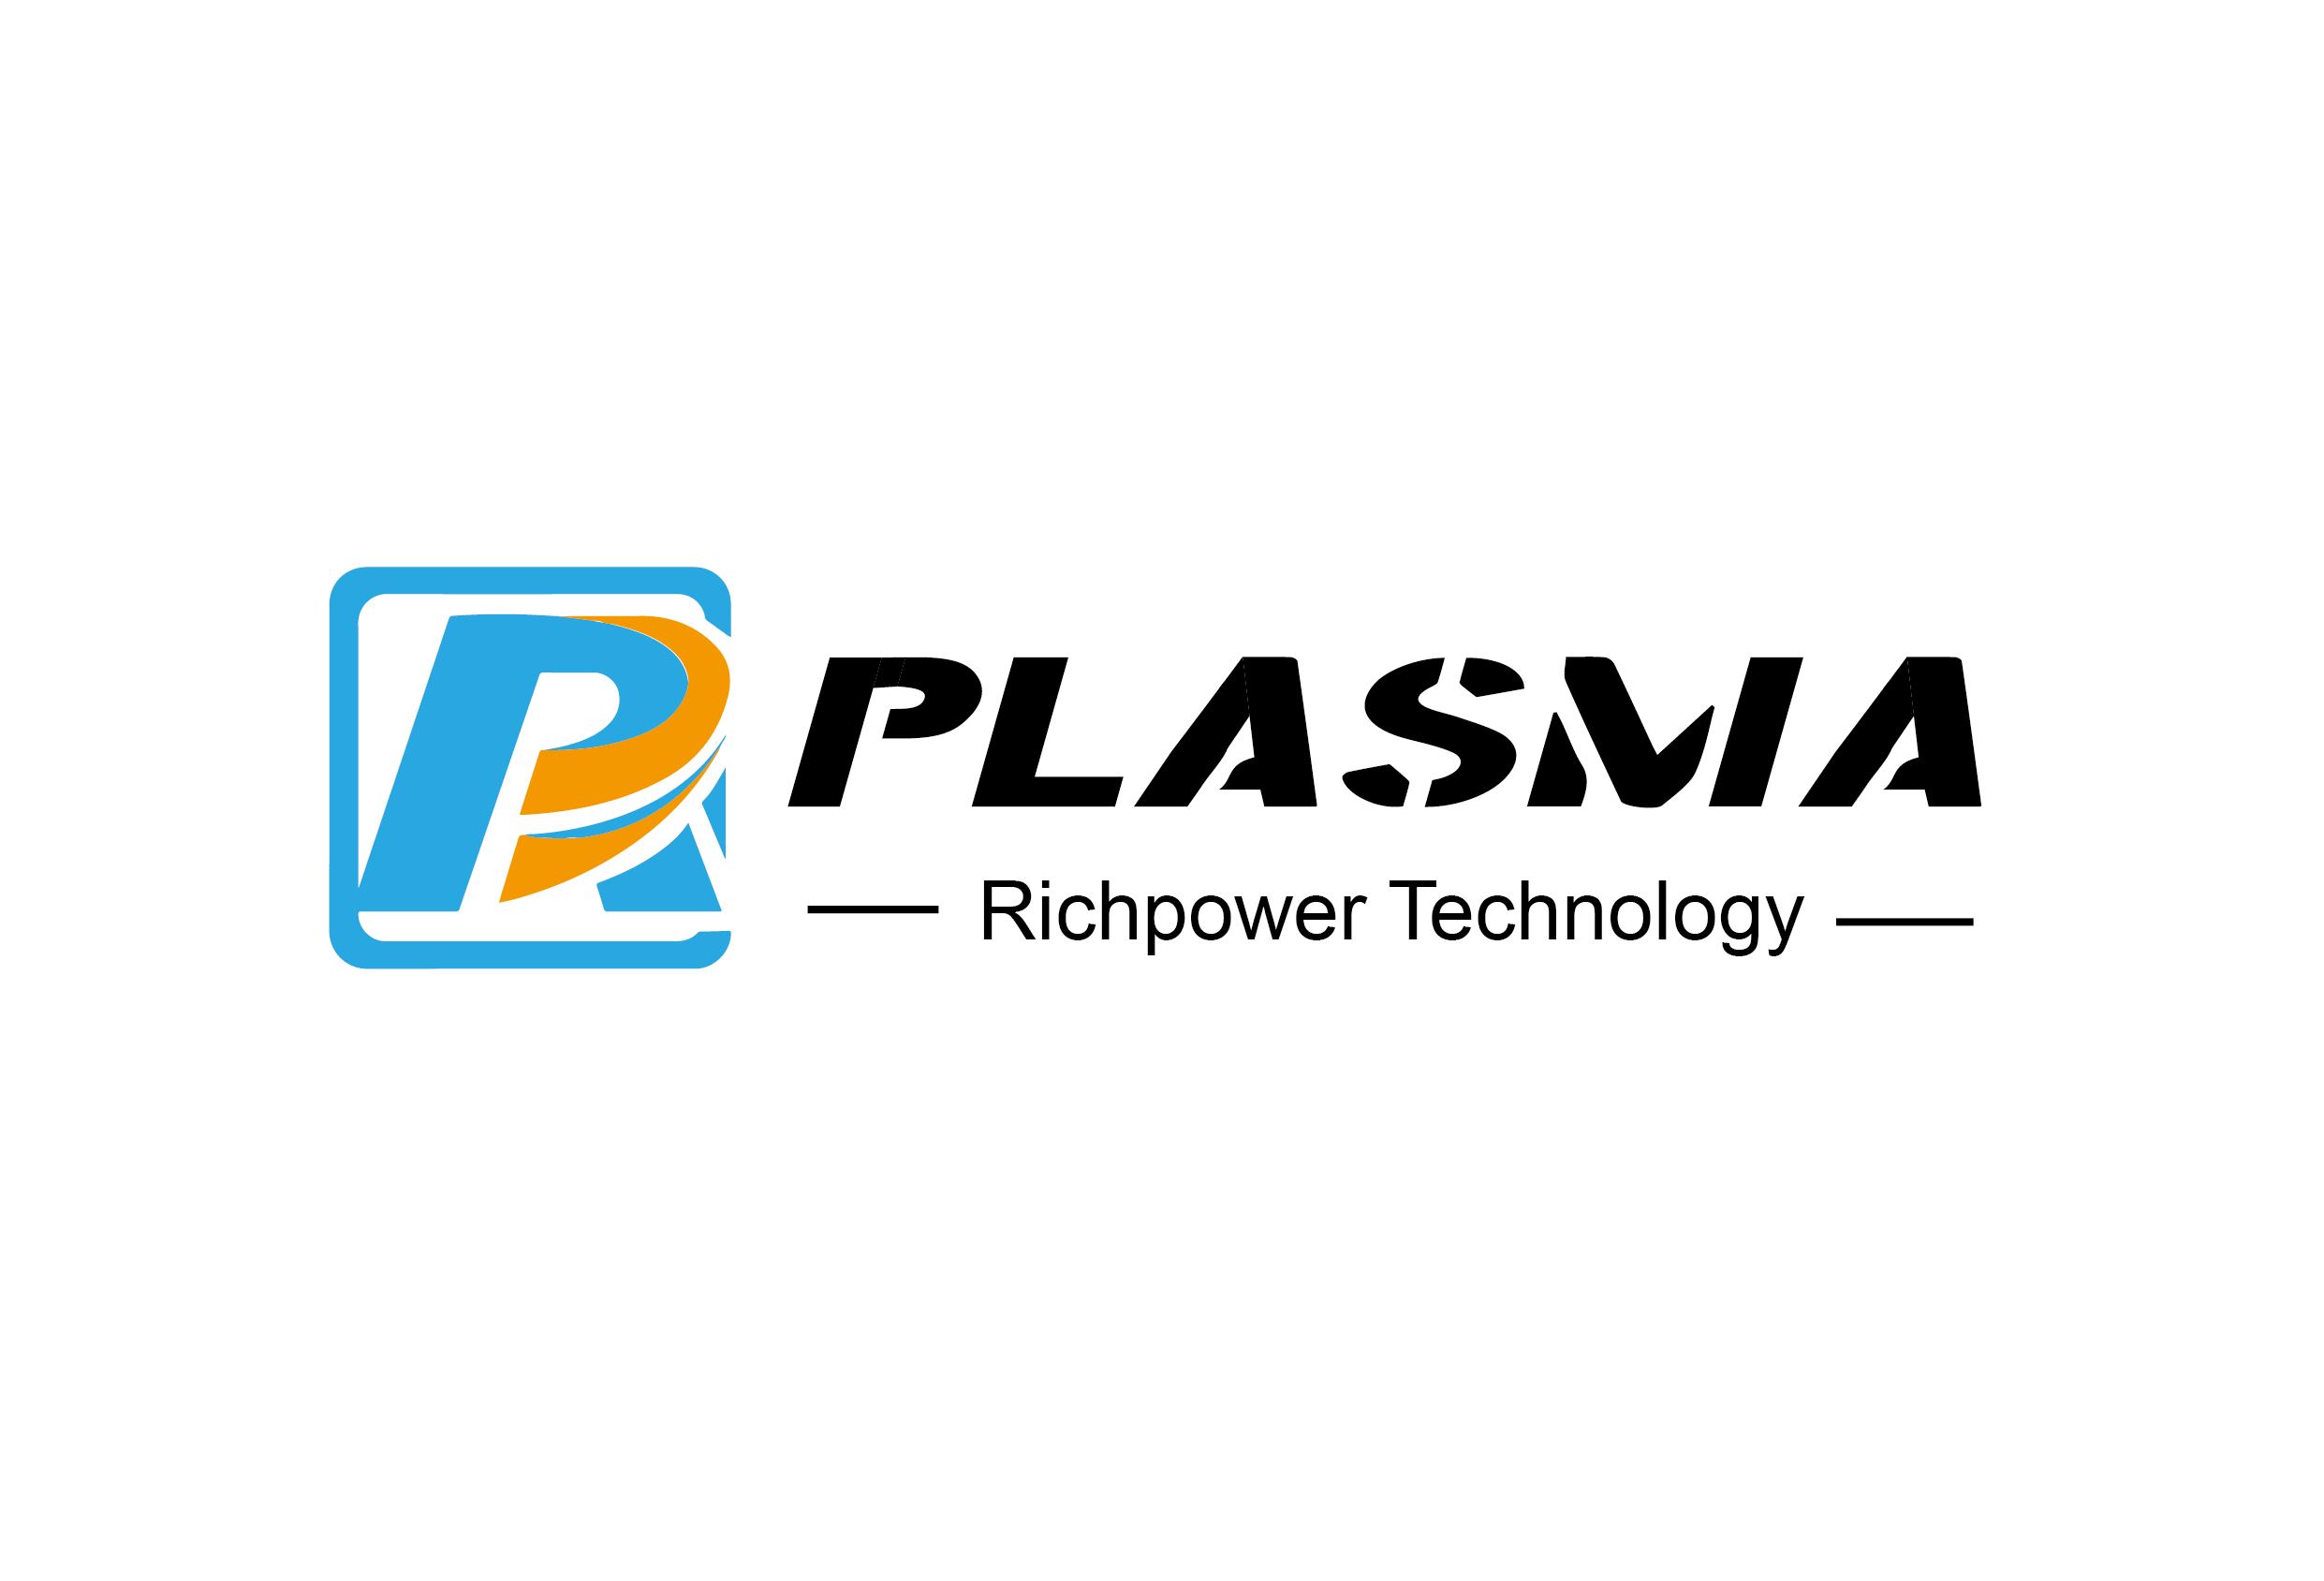 RP Plasma